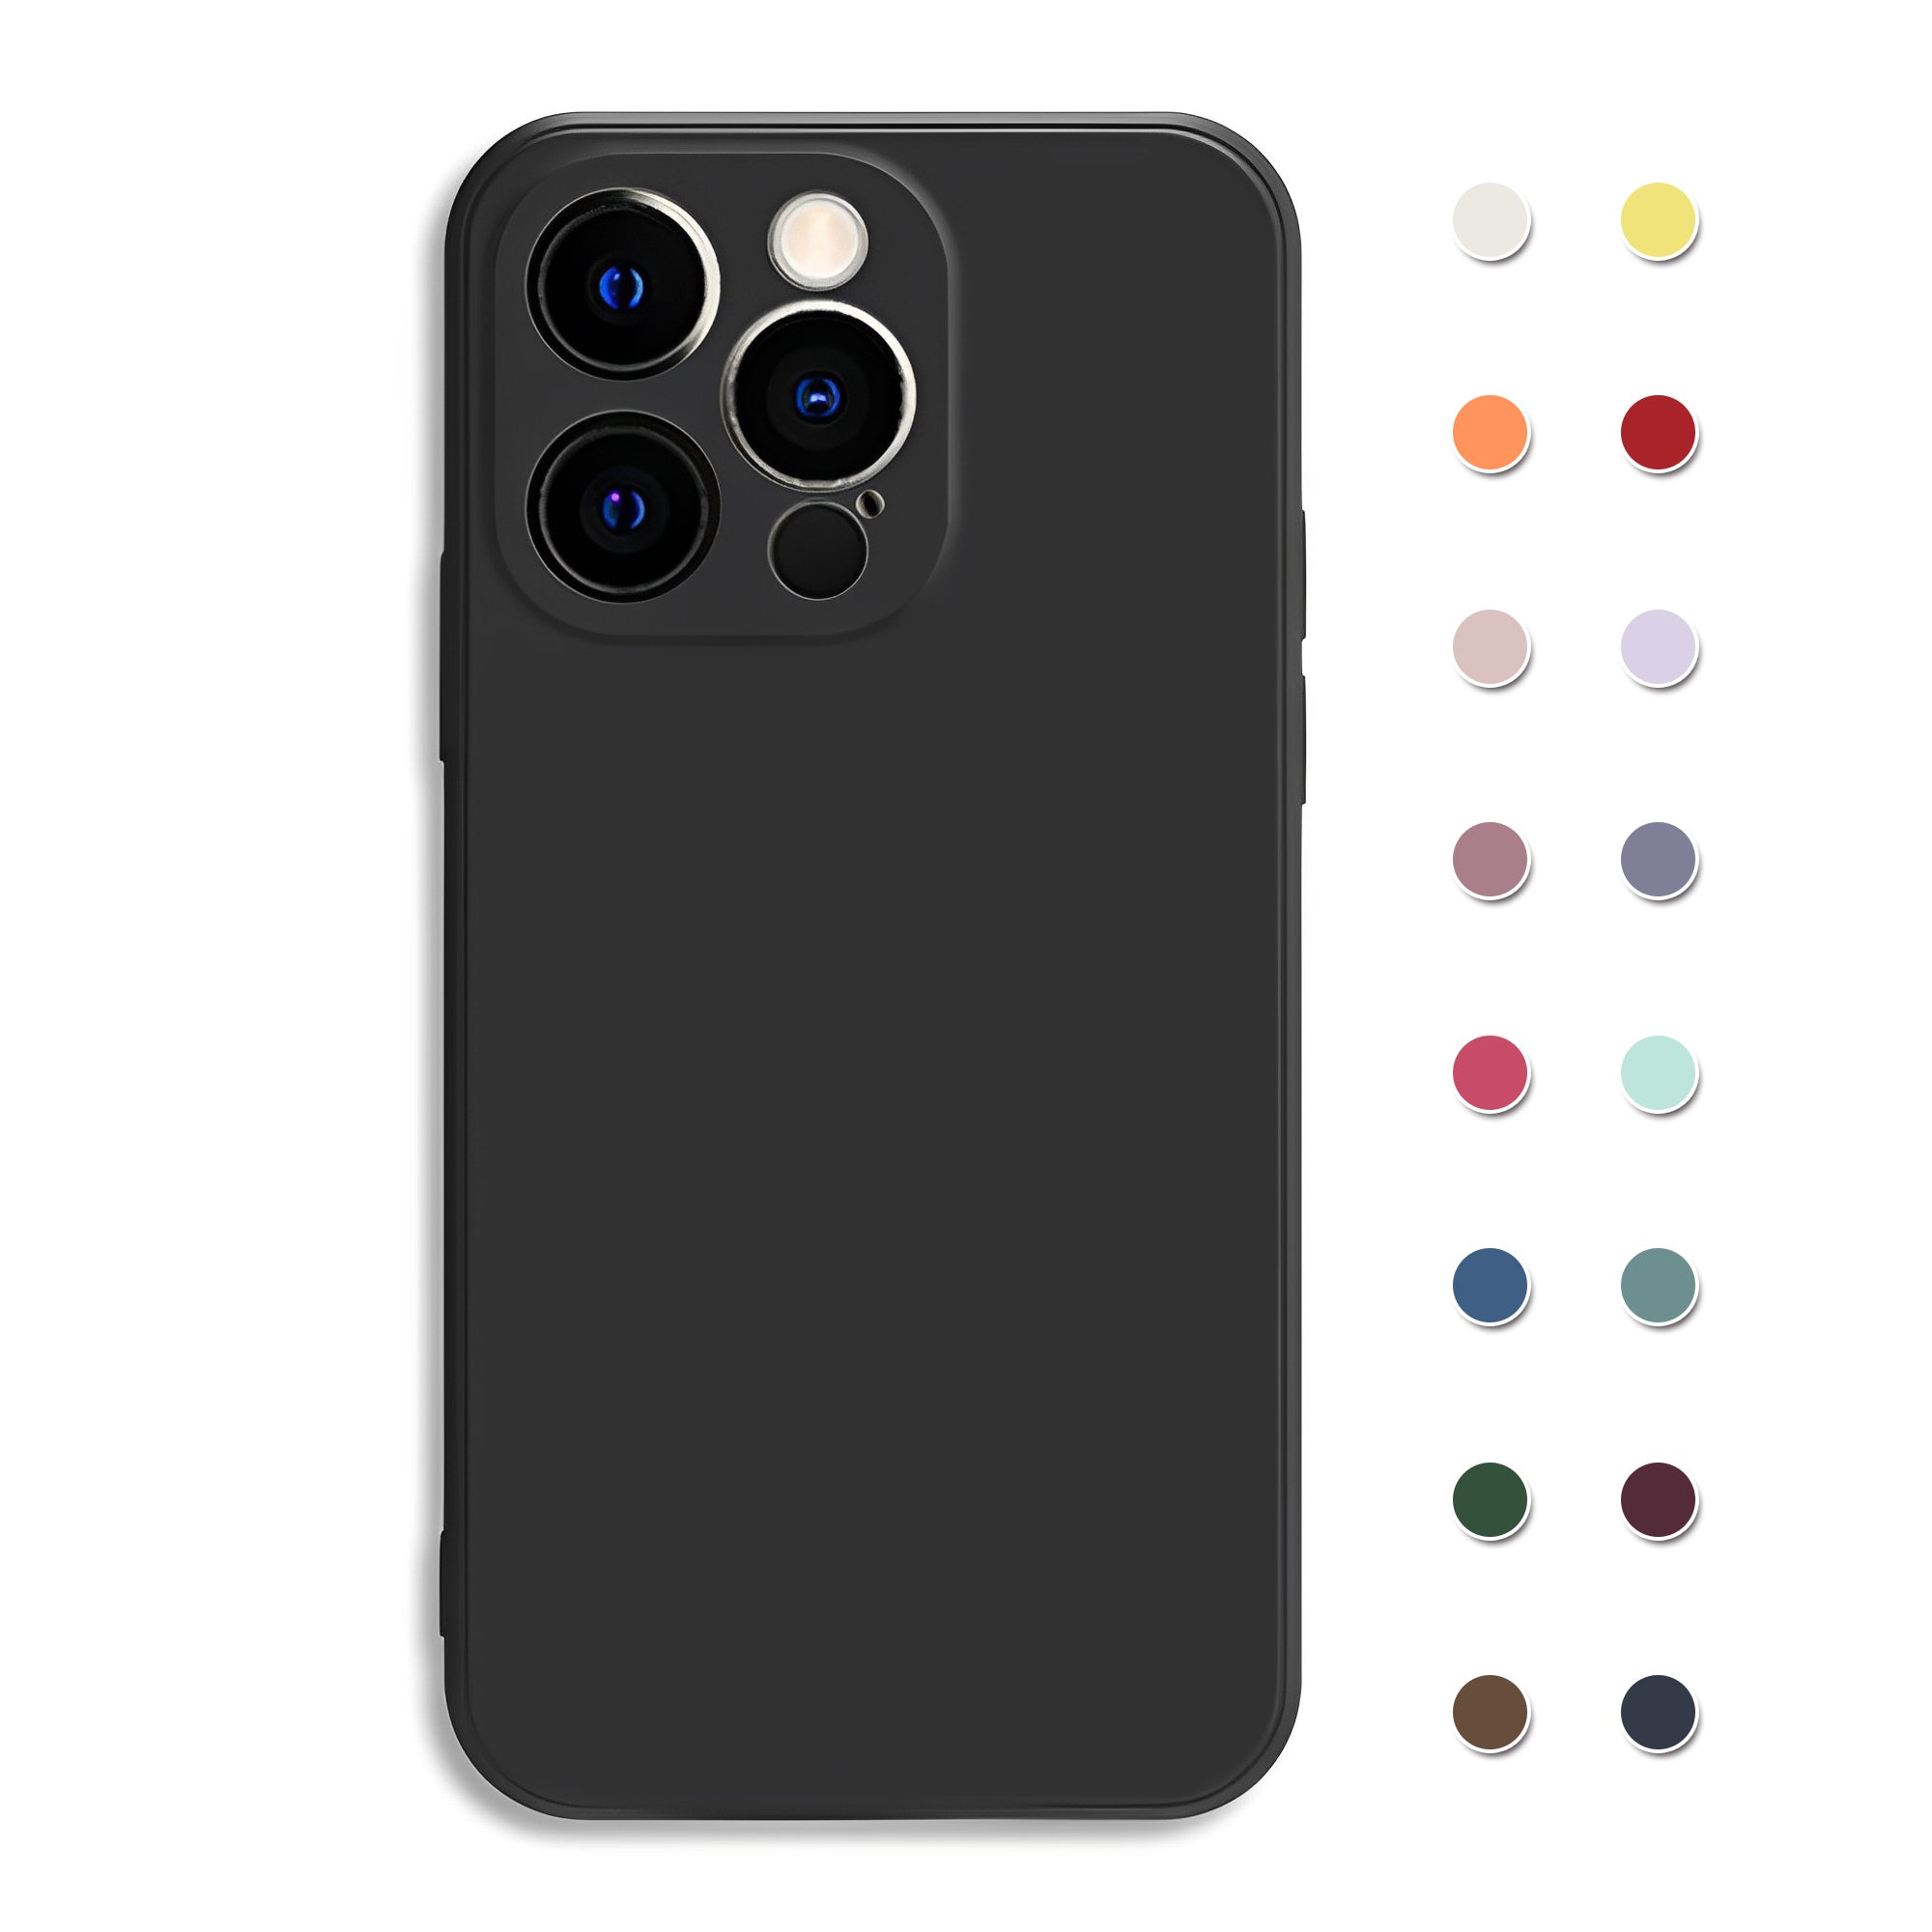 iPhone Case - Black Liquid Silicone